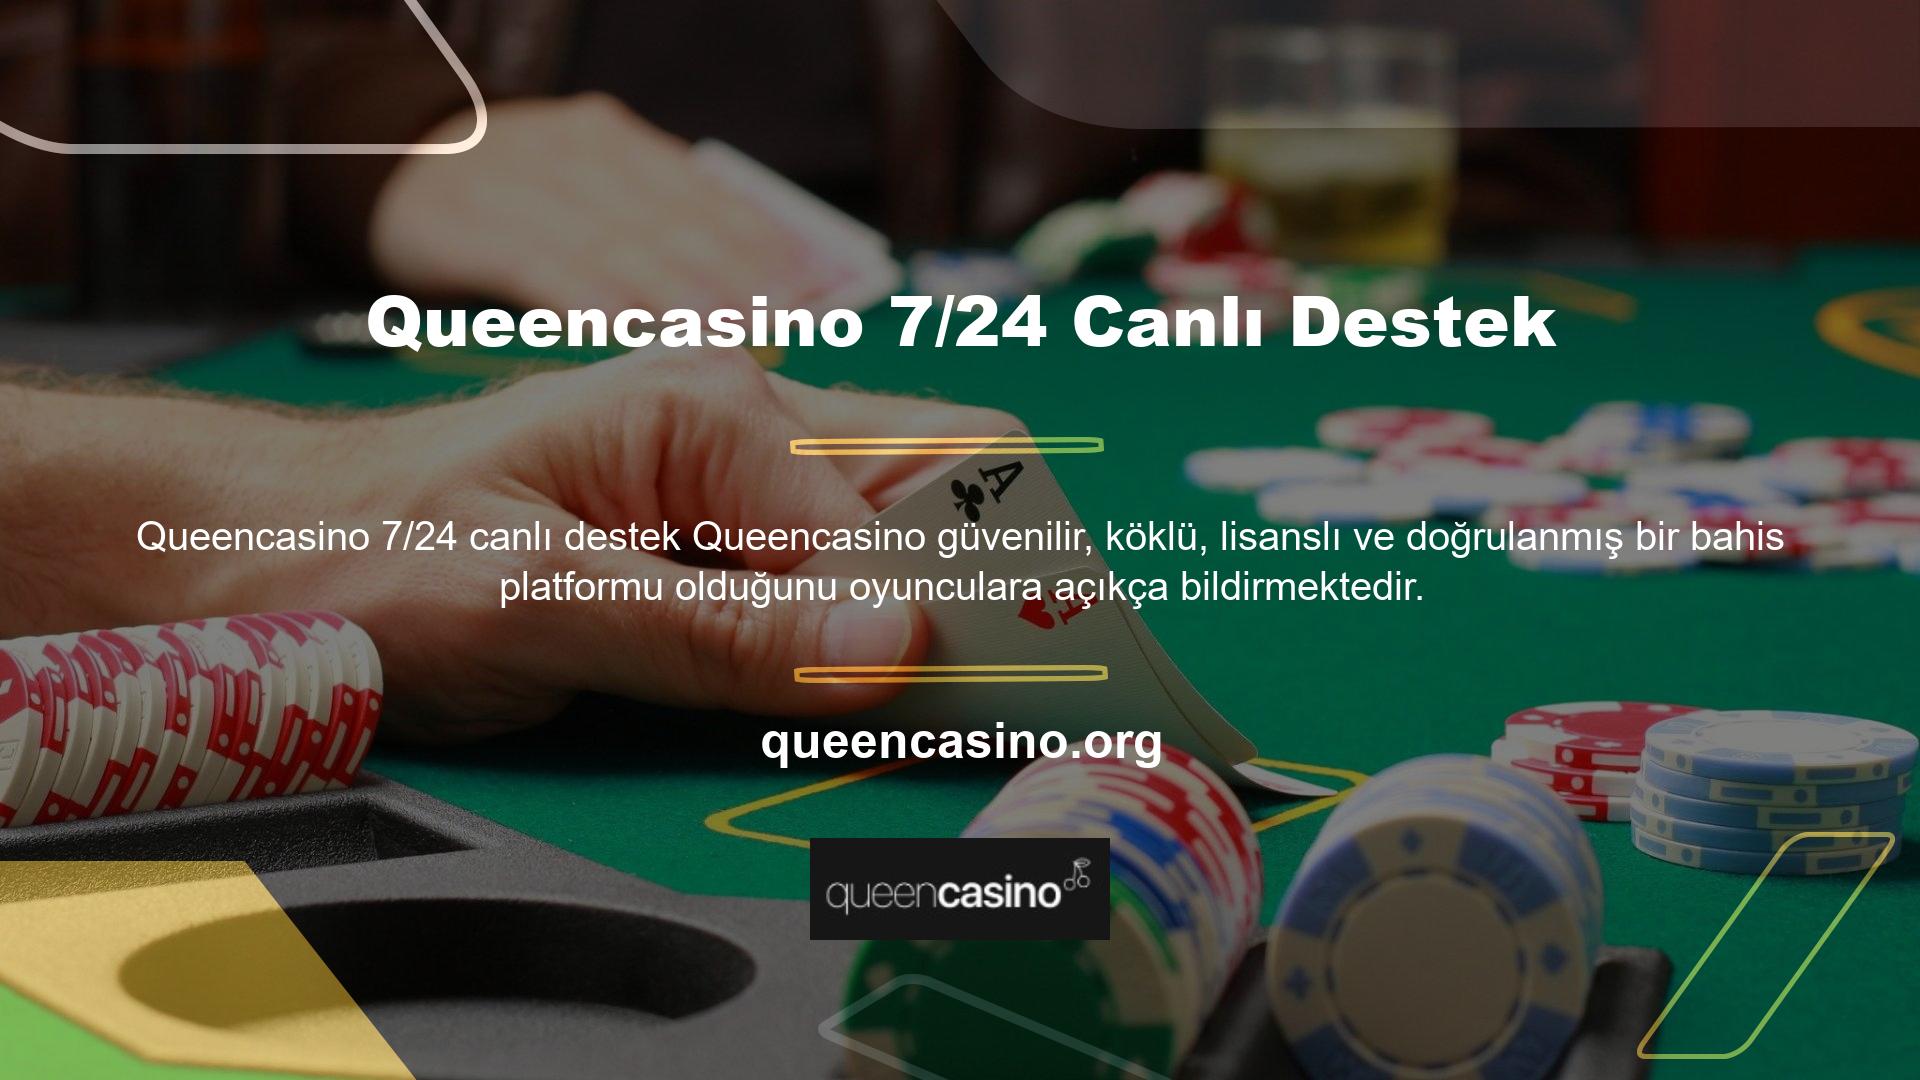 Queencasino güvenilir bir canlı casino var mı? Queencasino kuruluşundan bu yana, kullanıcıların soru ve gereksinimlerine hızlı bir şekilde yanıt vermiş ve 24 saat iletişim yoluyla sürekli destek sağlamıştır